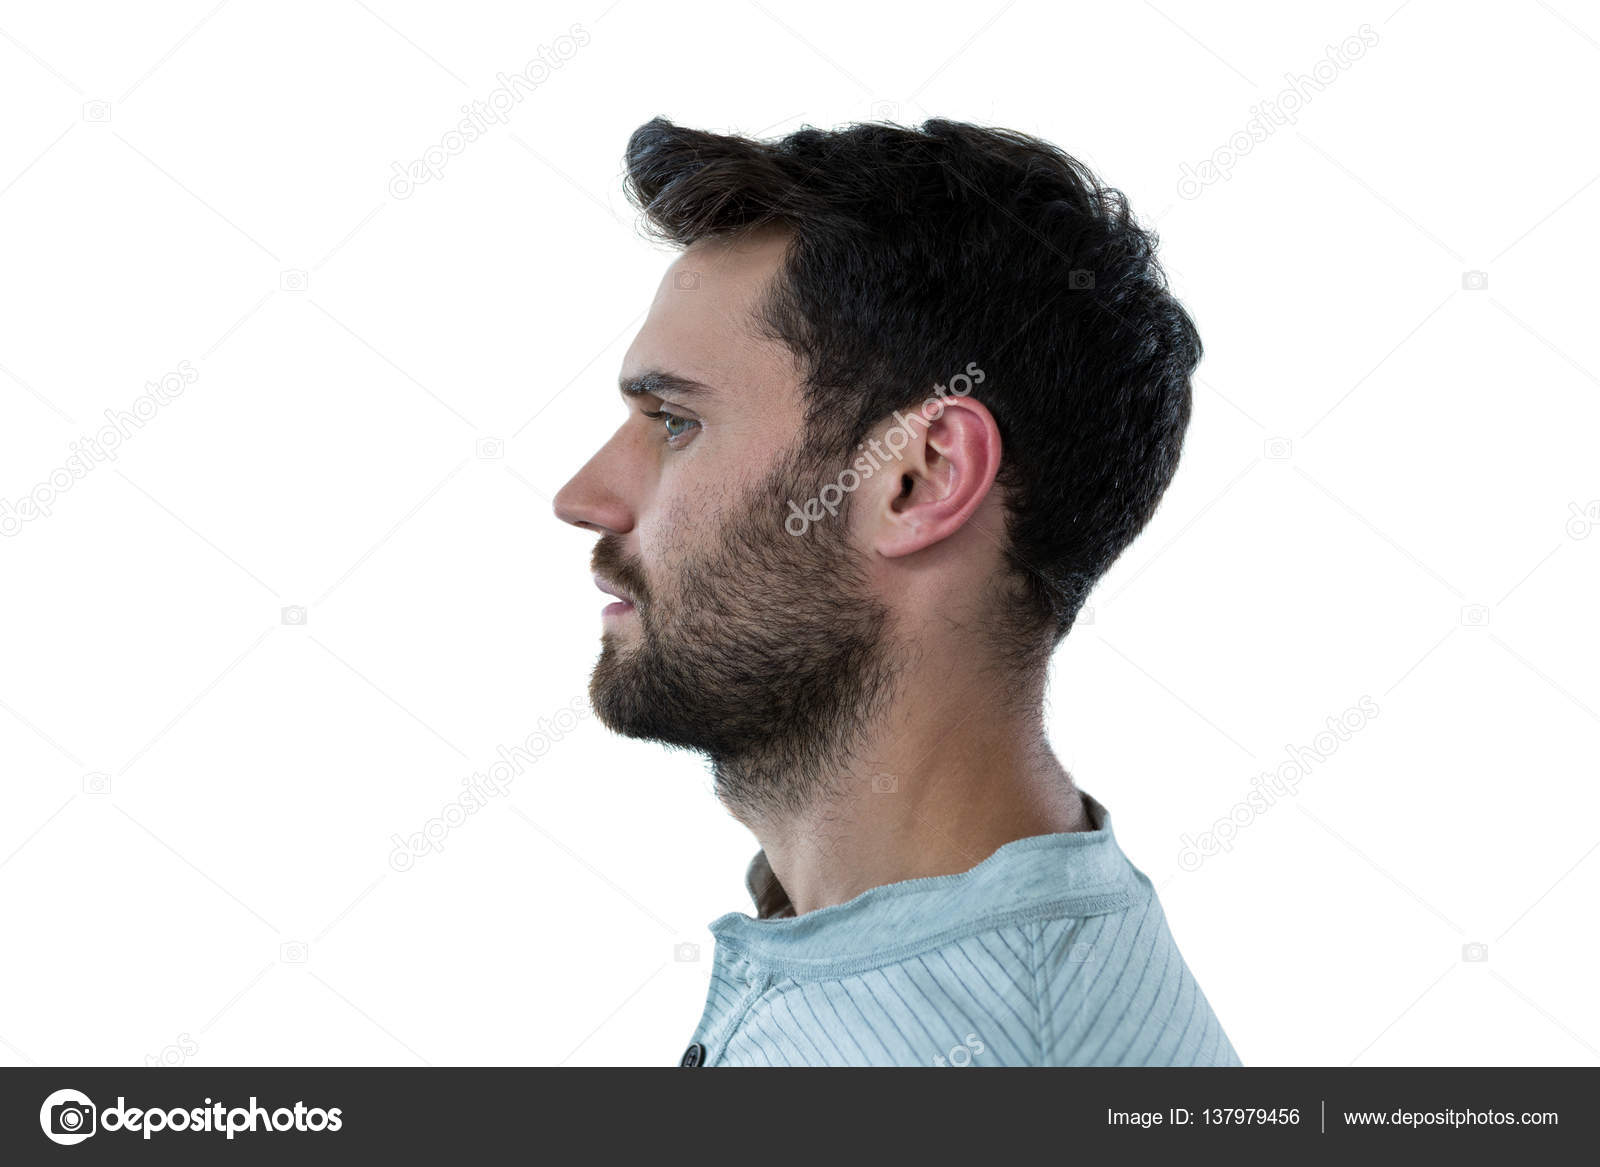 man faces side view - Google Search | Portrait, Side view of face, Male  portrait